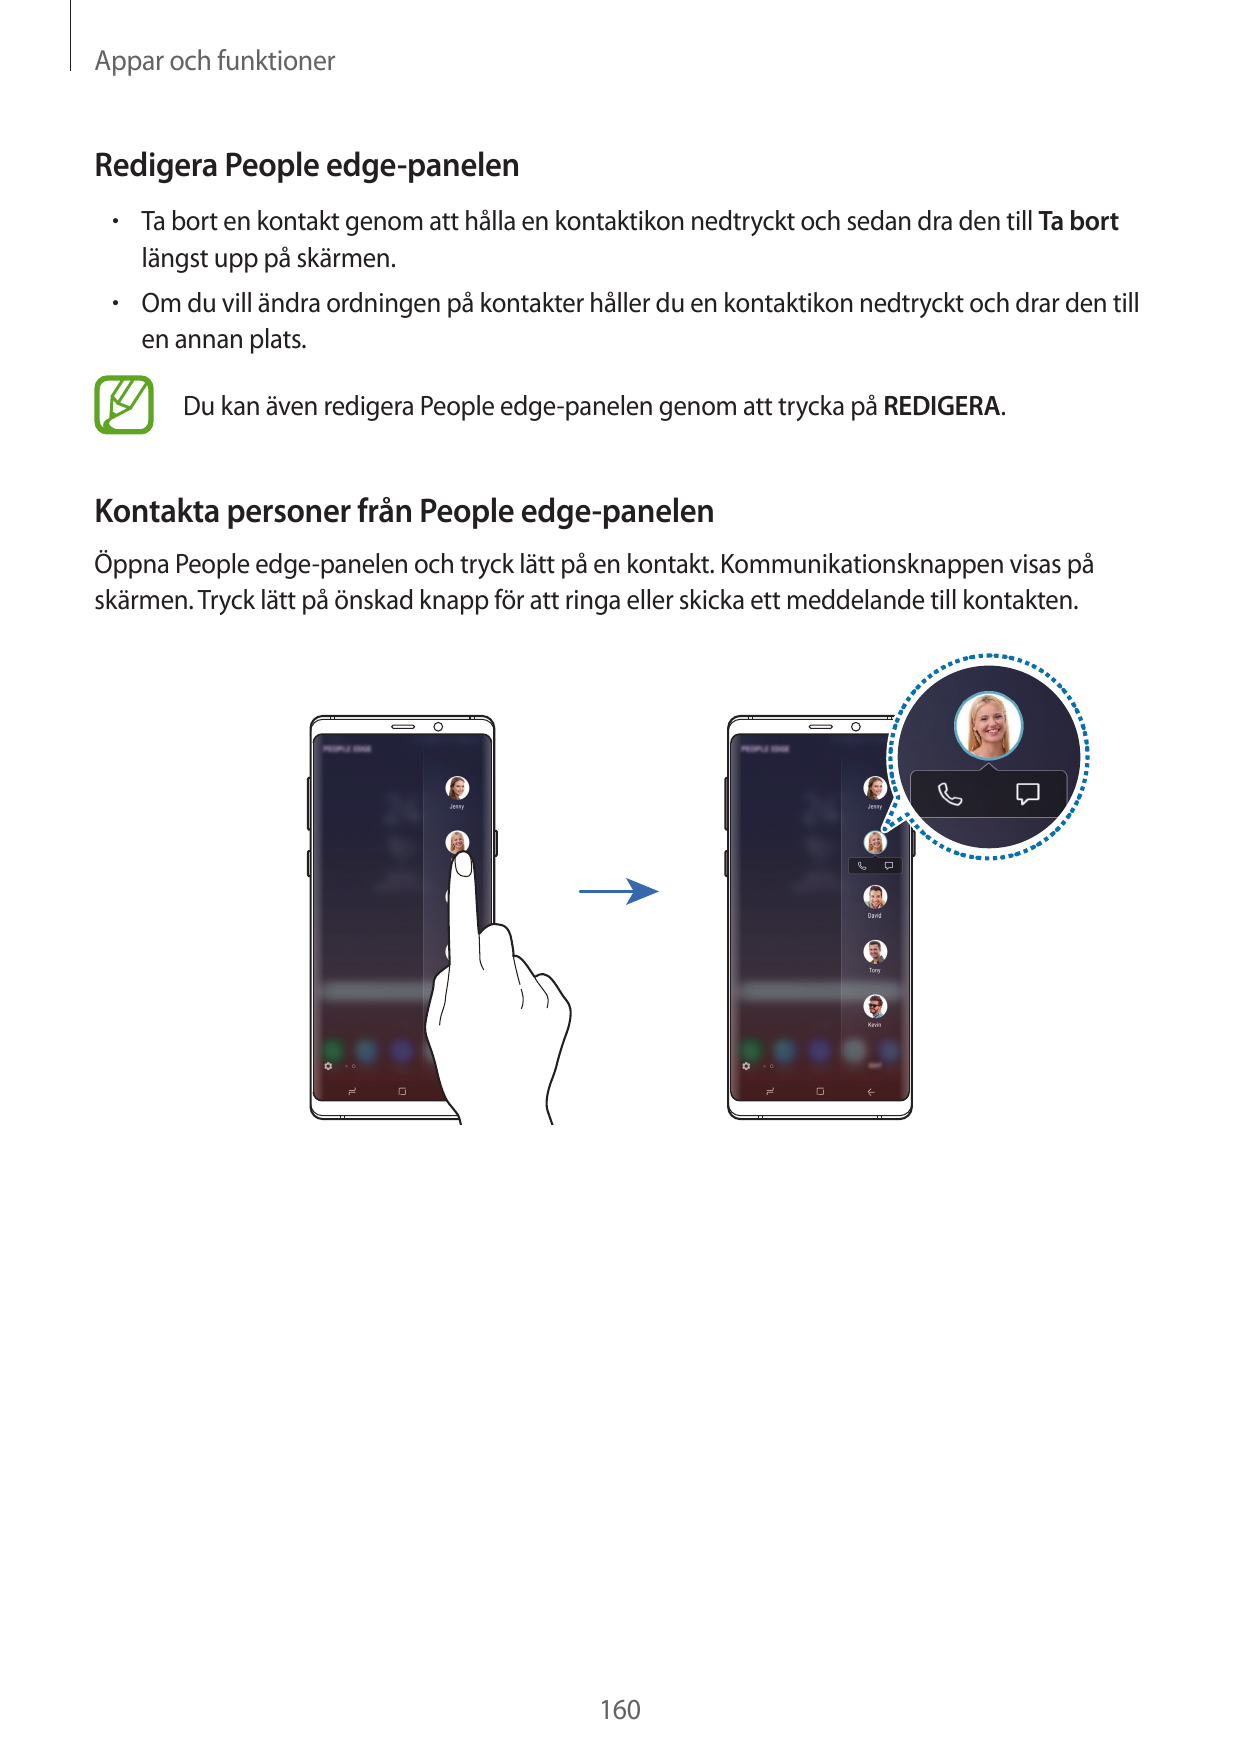 Appar och funktionerRedigera People edge-panelen• Ta bort en kontakt genom att hålla en kontaktikon nedtryckt och sedan dra den 